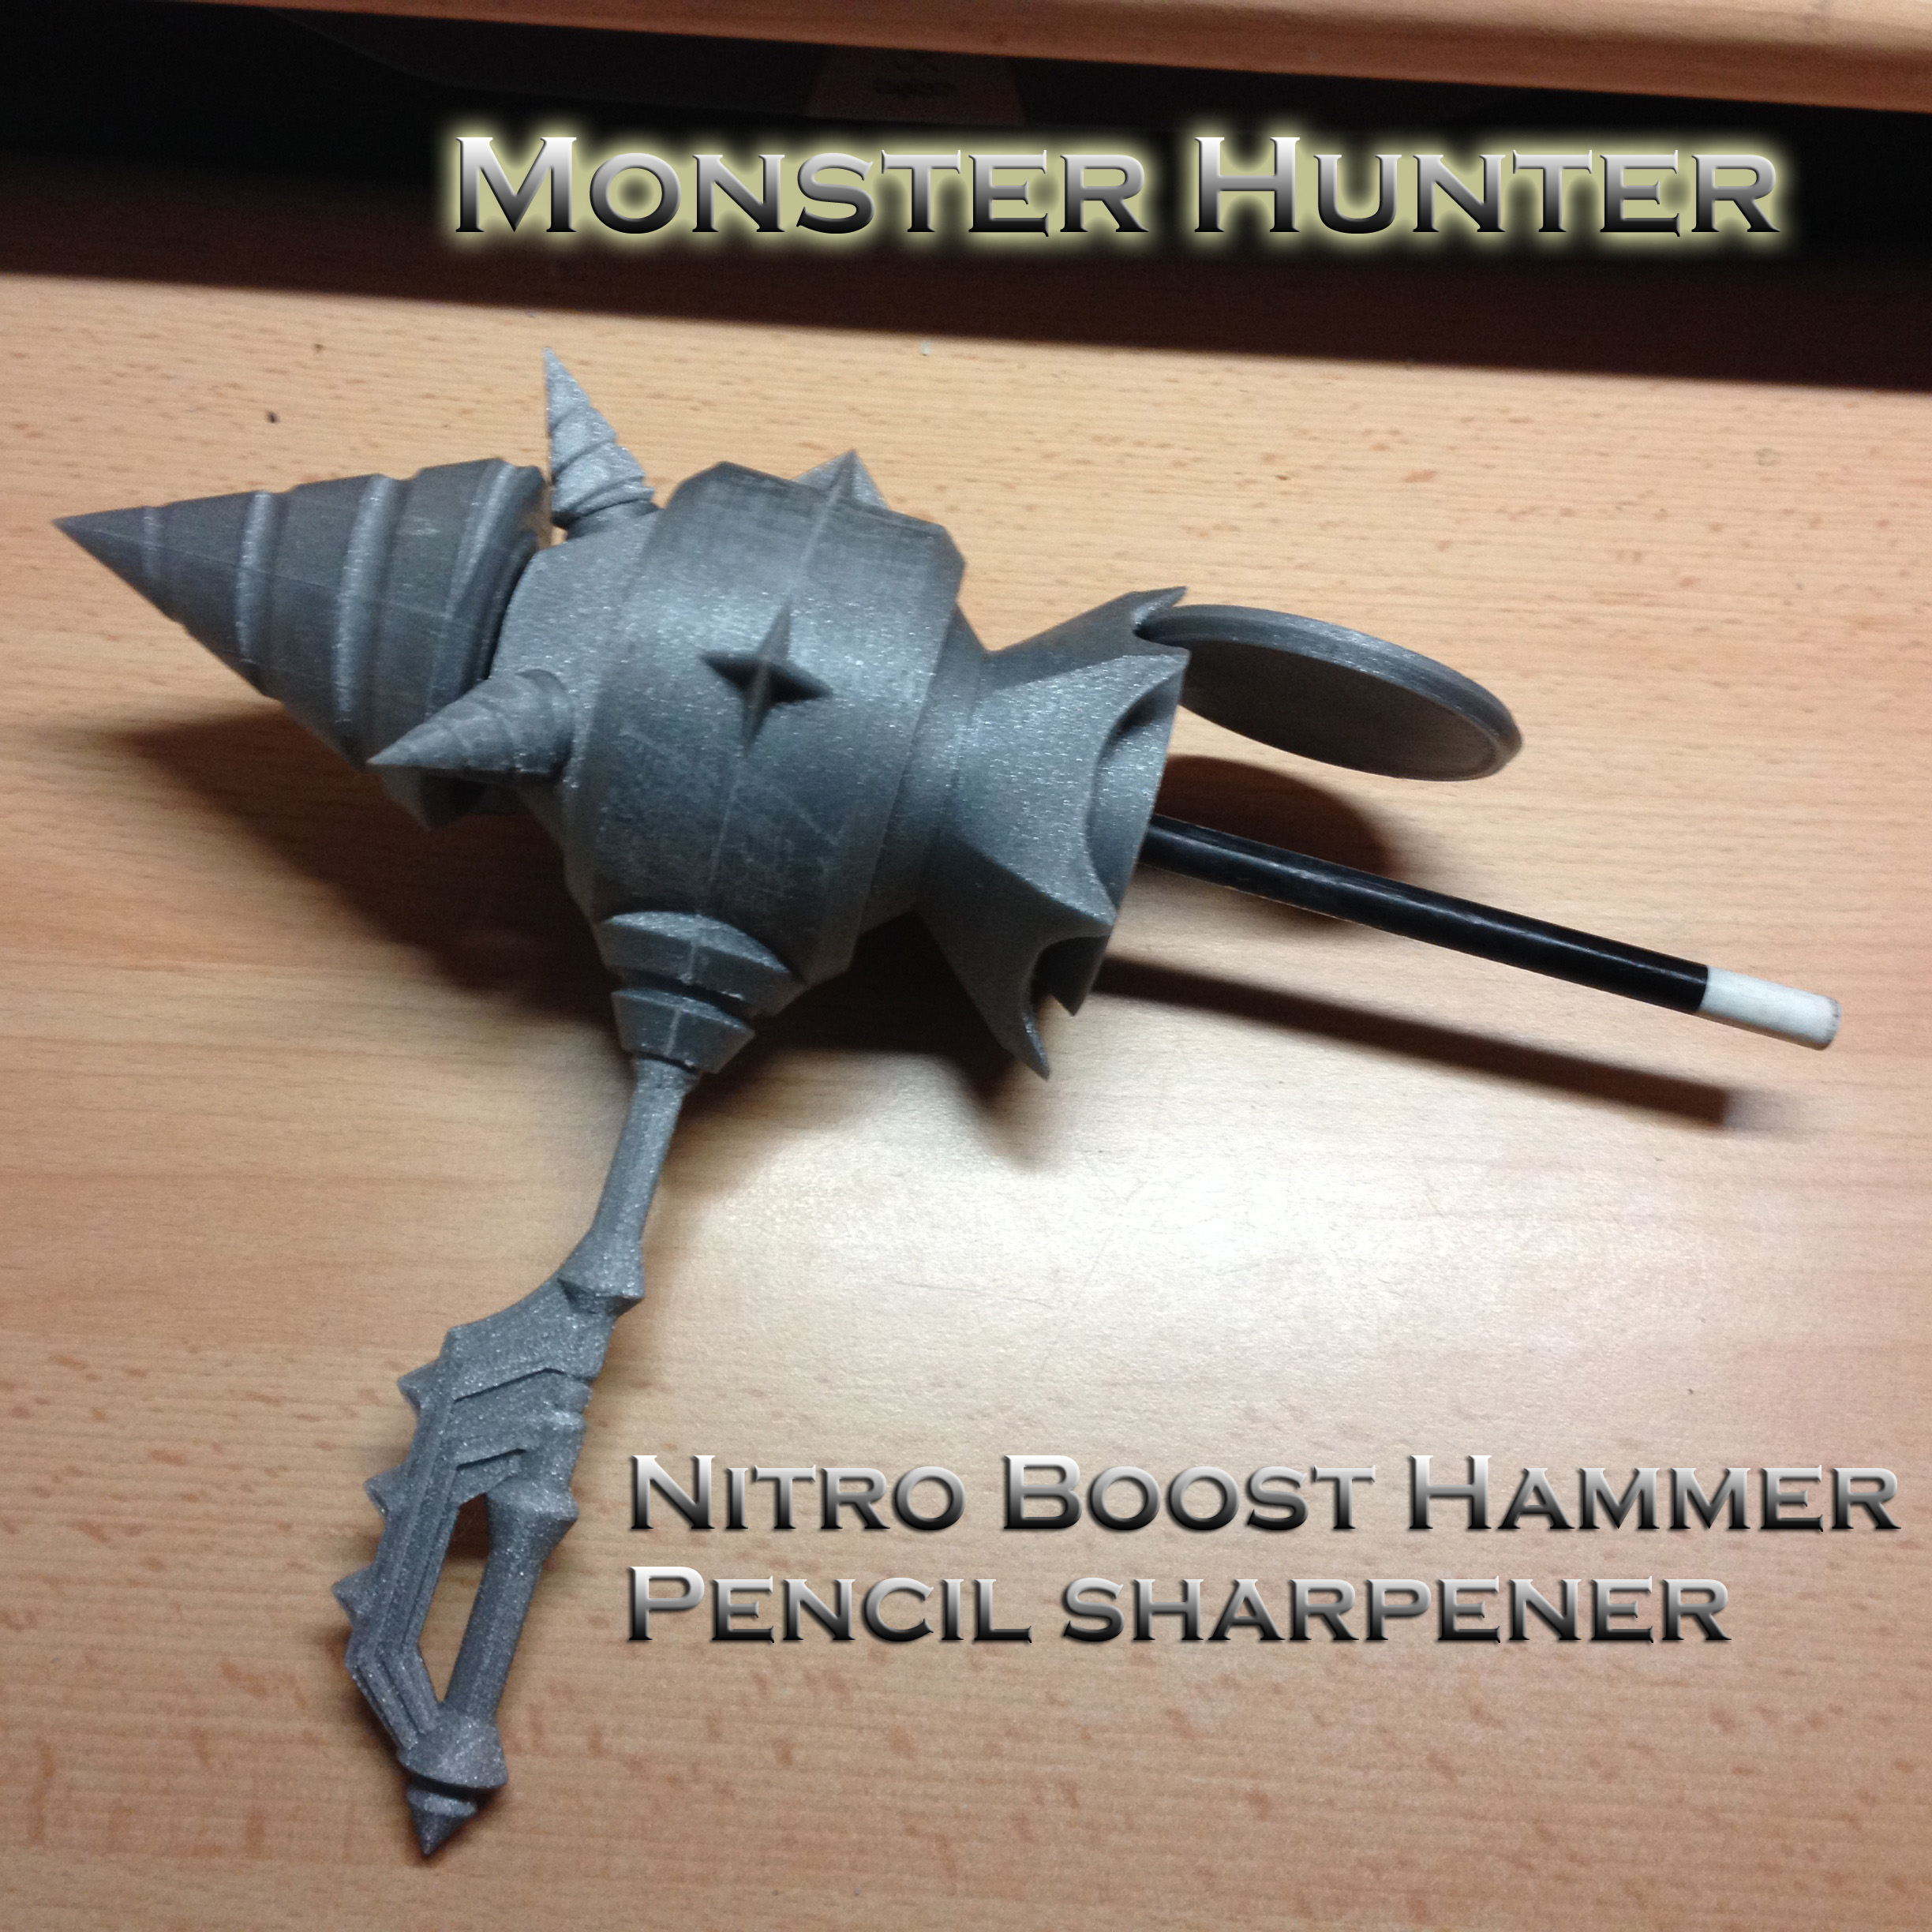 Monster Hunter pencil sharpner